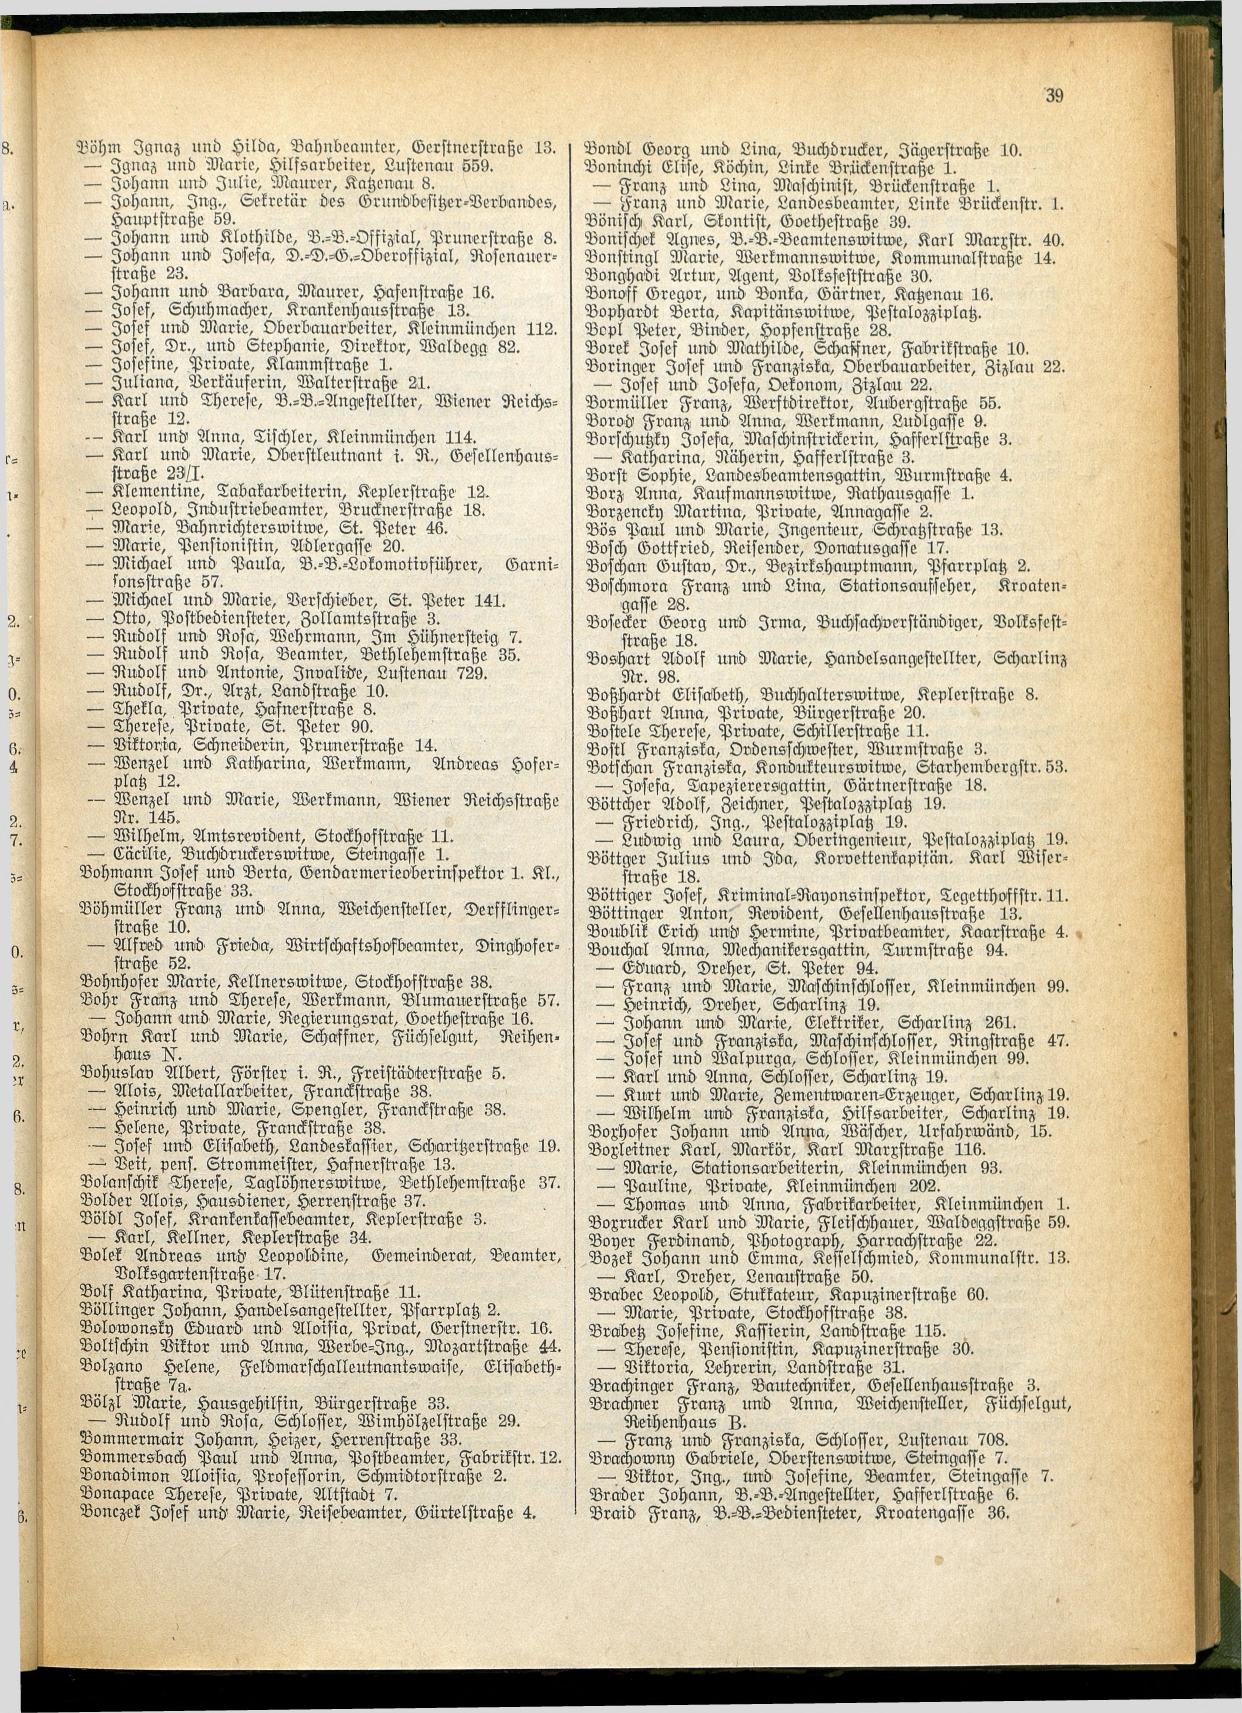 Amtliches Linzer Adreßbuch 1928 - Seite 41